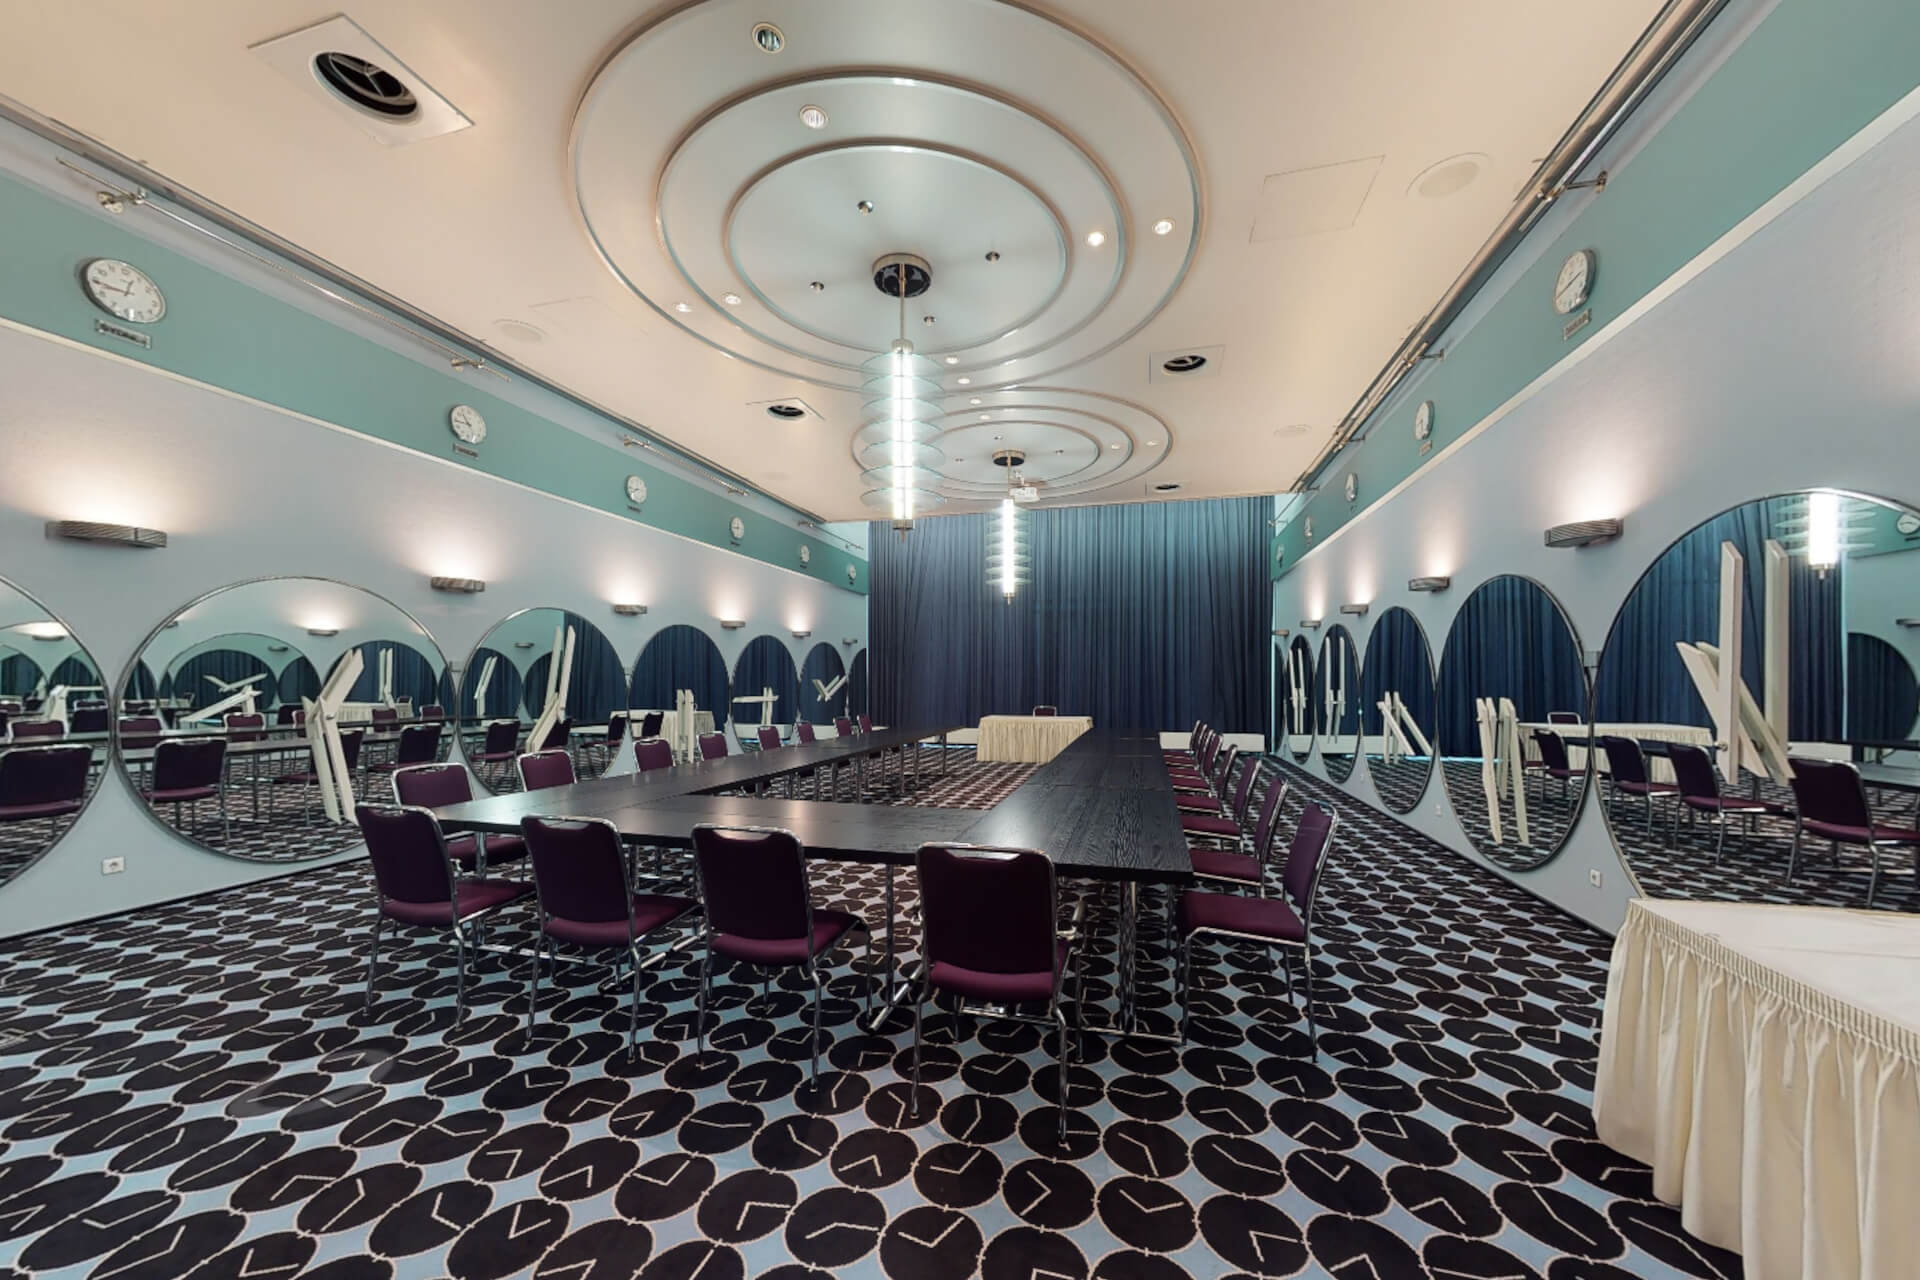 Ein Blick in den Salon Danzig, eines der Konferenz-Zimmer bei CONGRESS BREMEN. Tische sind als aufgebaut, Stühle herum drapirt. Der Fußboden hat ein schwarz-weißes Muster mit Kreiselementen, die sich auch am Stuck der Decke wiederfinden. Farblich bestimmt gedecktes Blau bis Türkis mit Schwarz am Boden und Beige an der Decke.